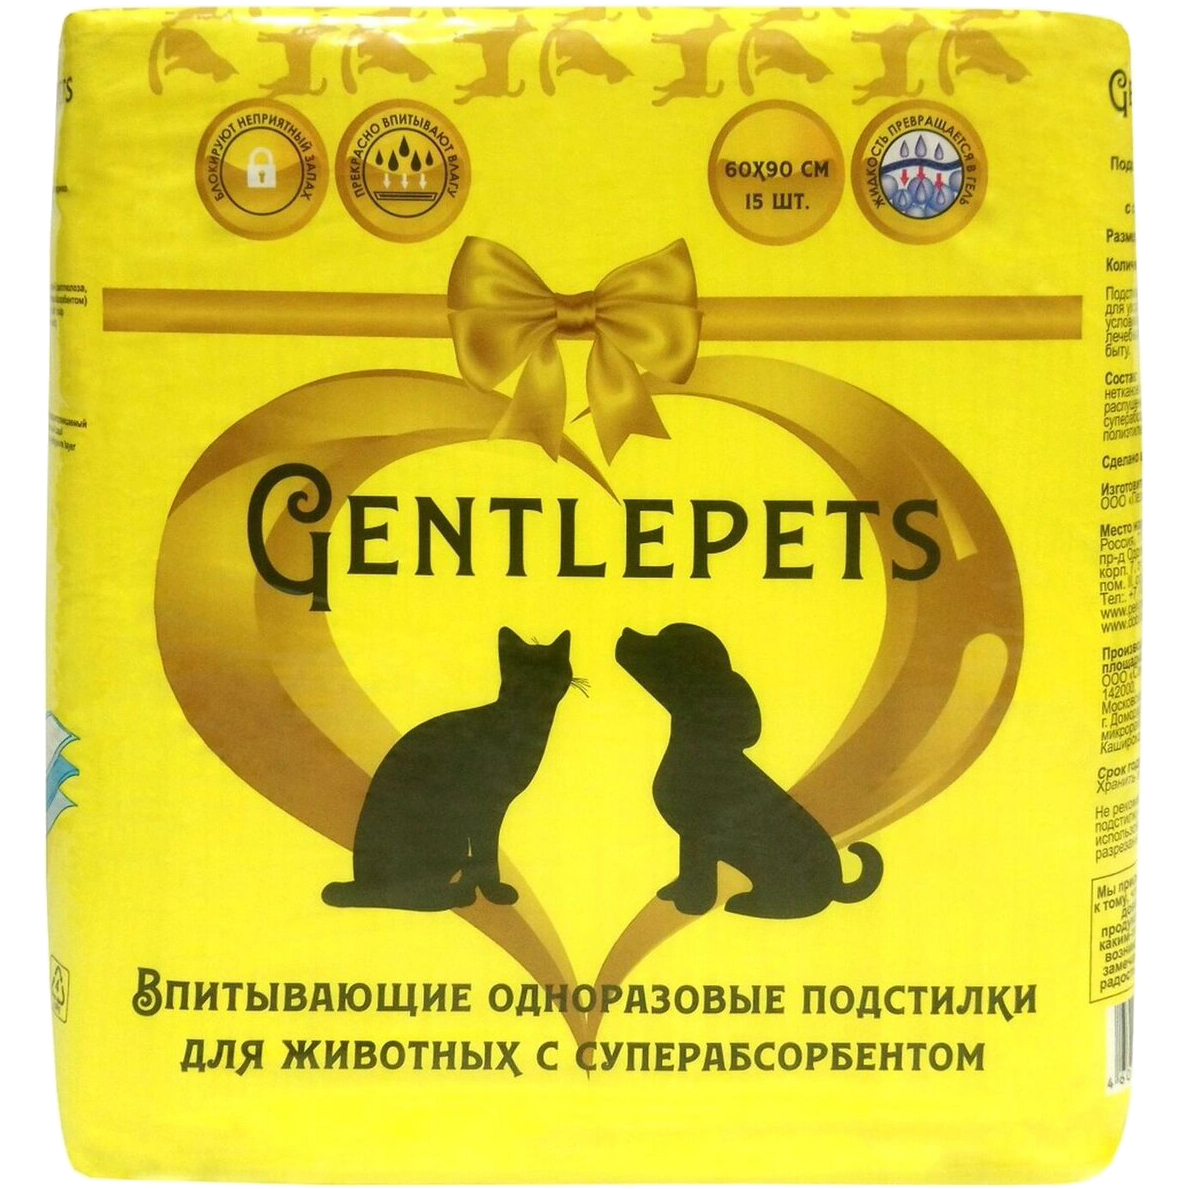 Подстилки для домашних животных Gentlepets впитывающие с суперабсорбентом 60х90 см 15 шт